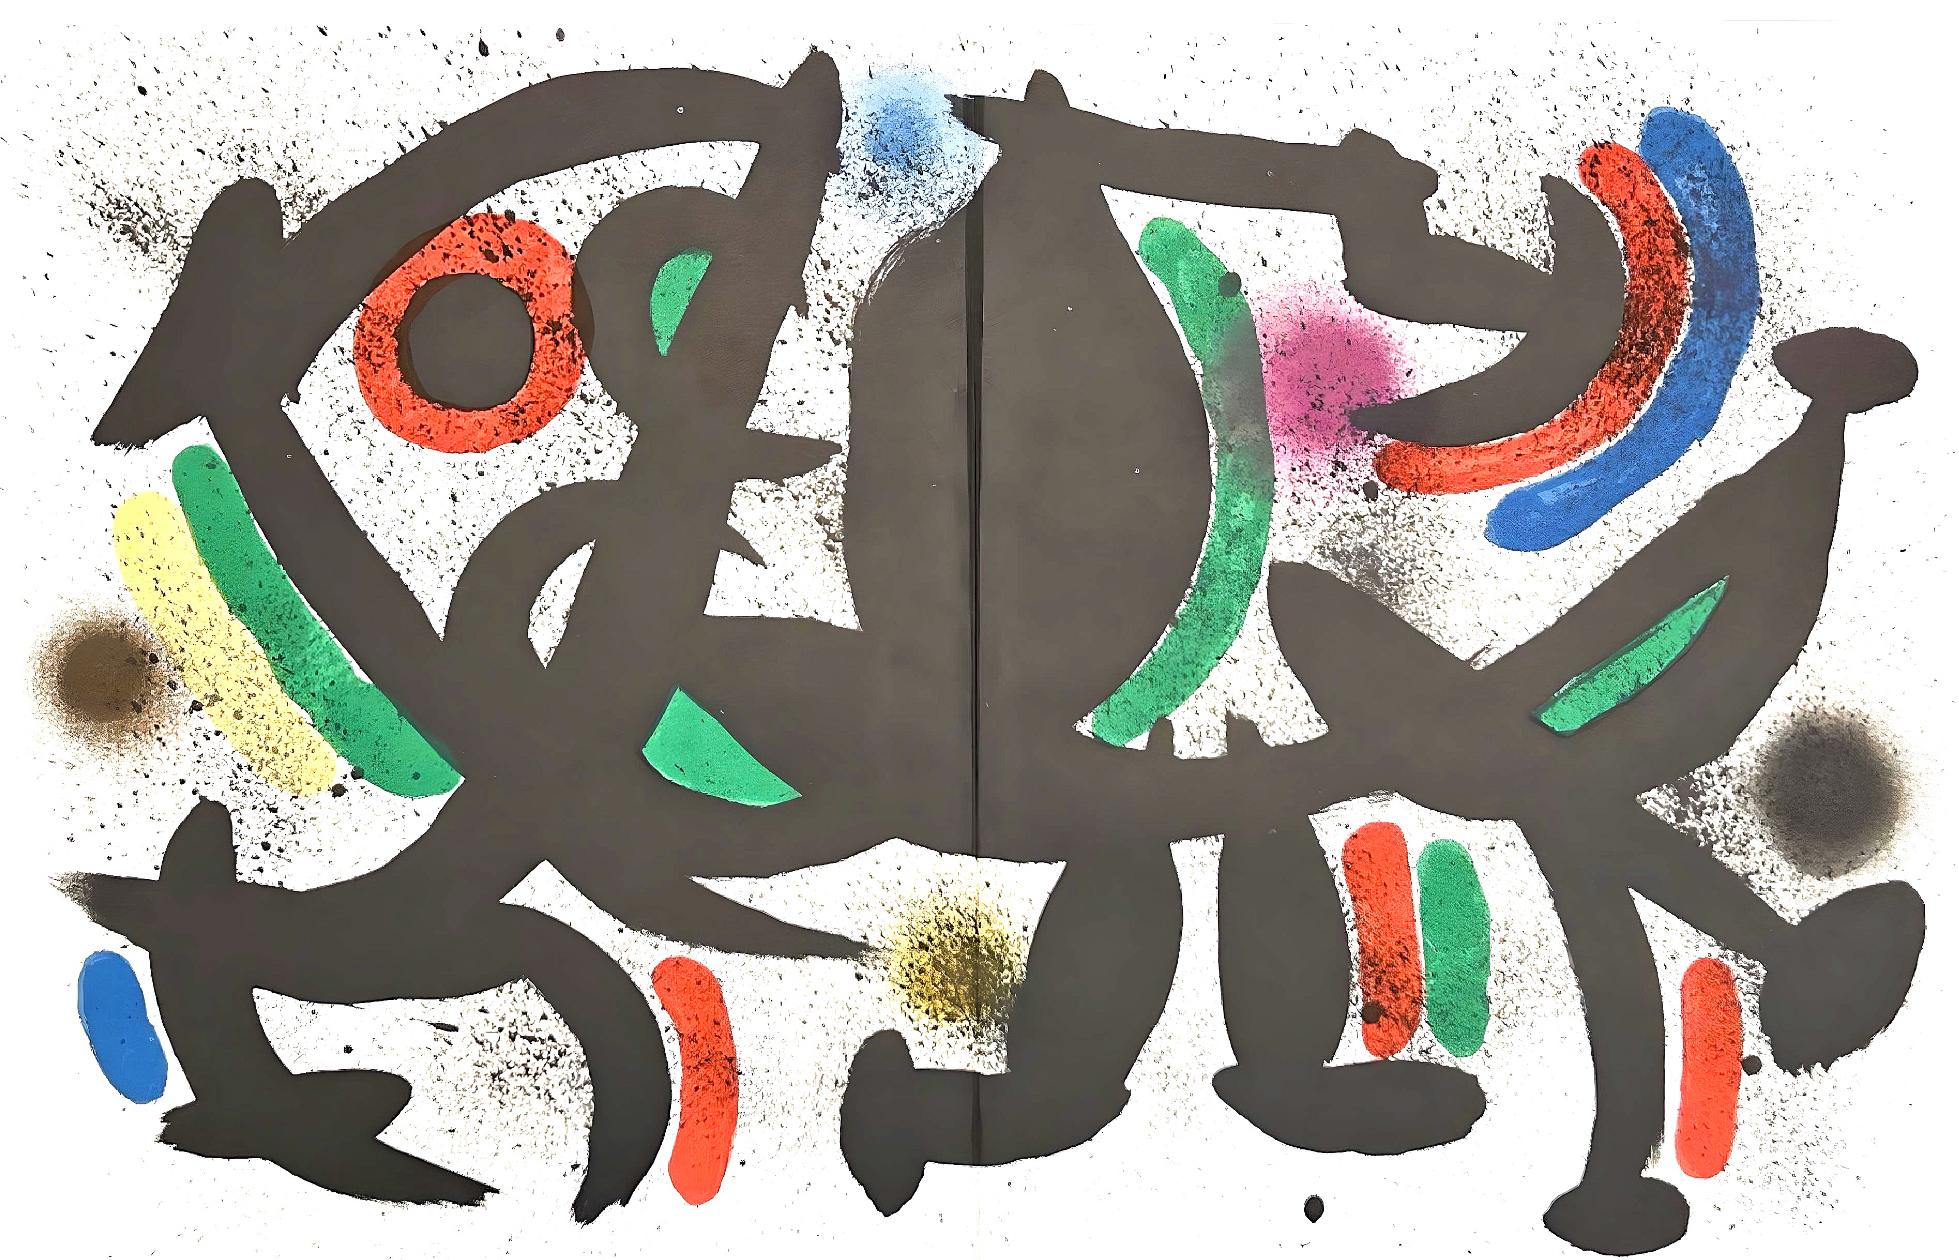 Joan Miró Abstract Print - Miró, Litógrafia original VII (Cramer 160; Mourlot 864), Litógrafo I (after)